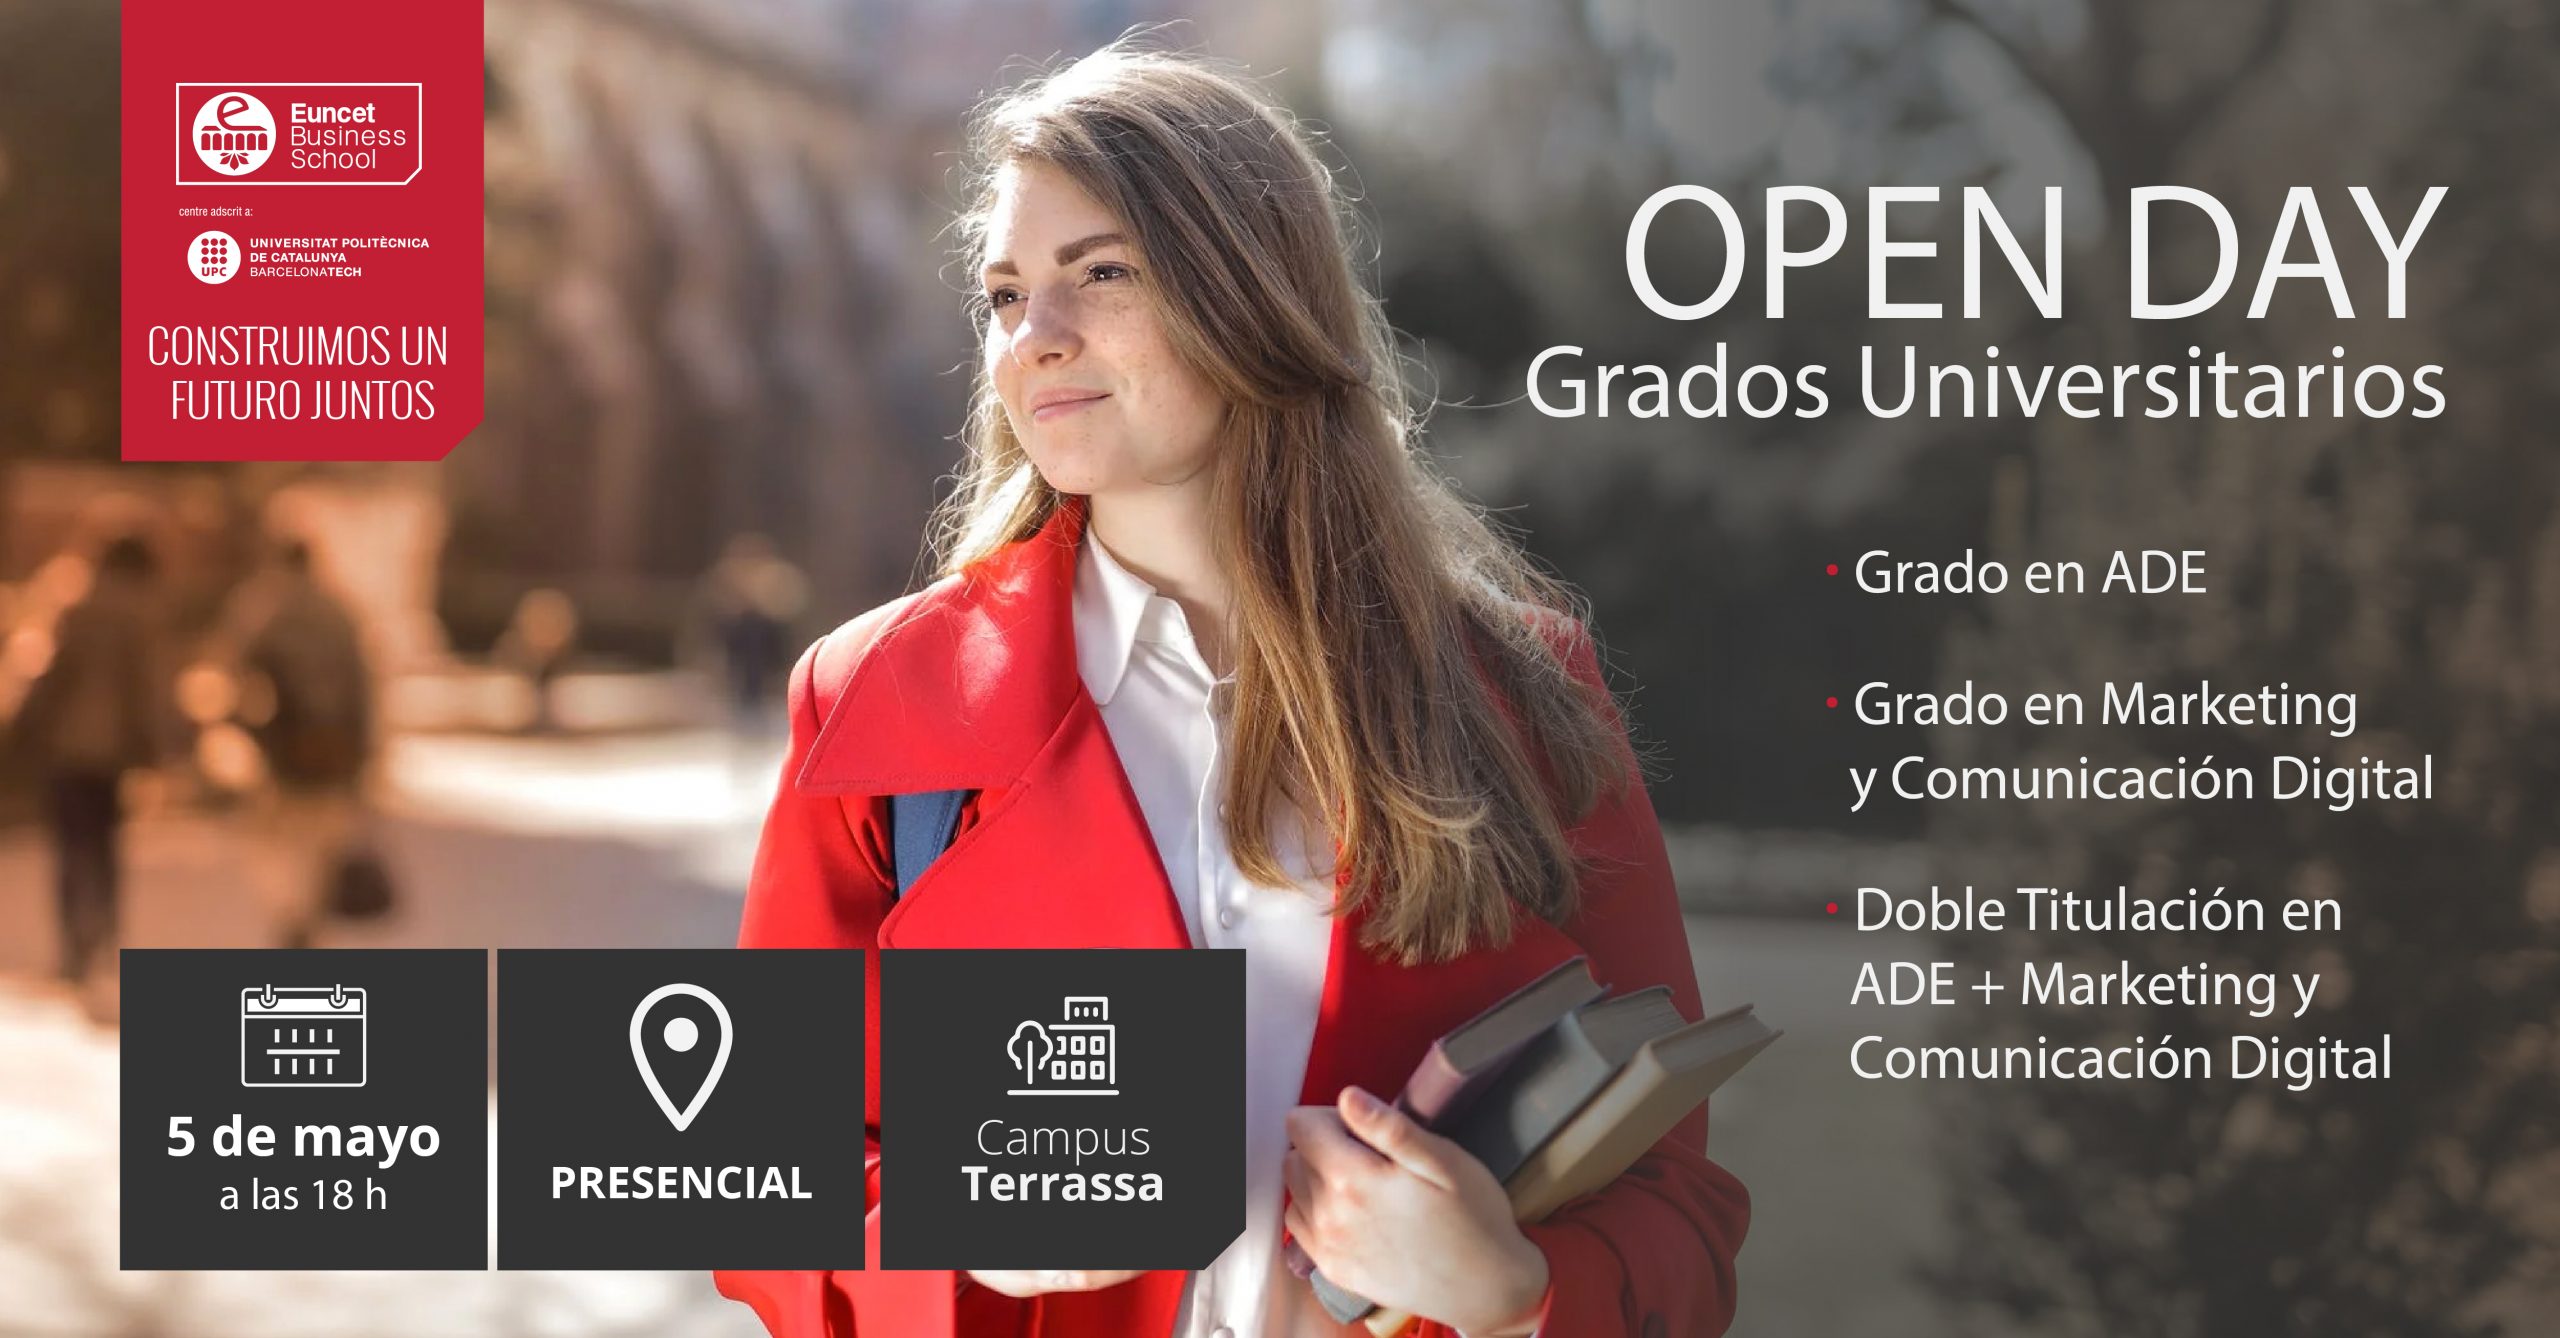 Grados Open day